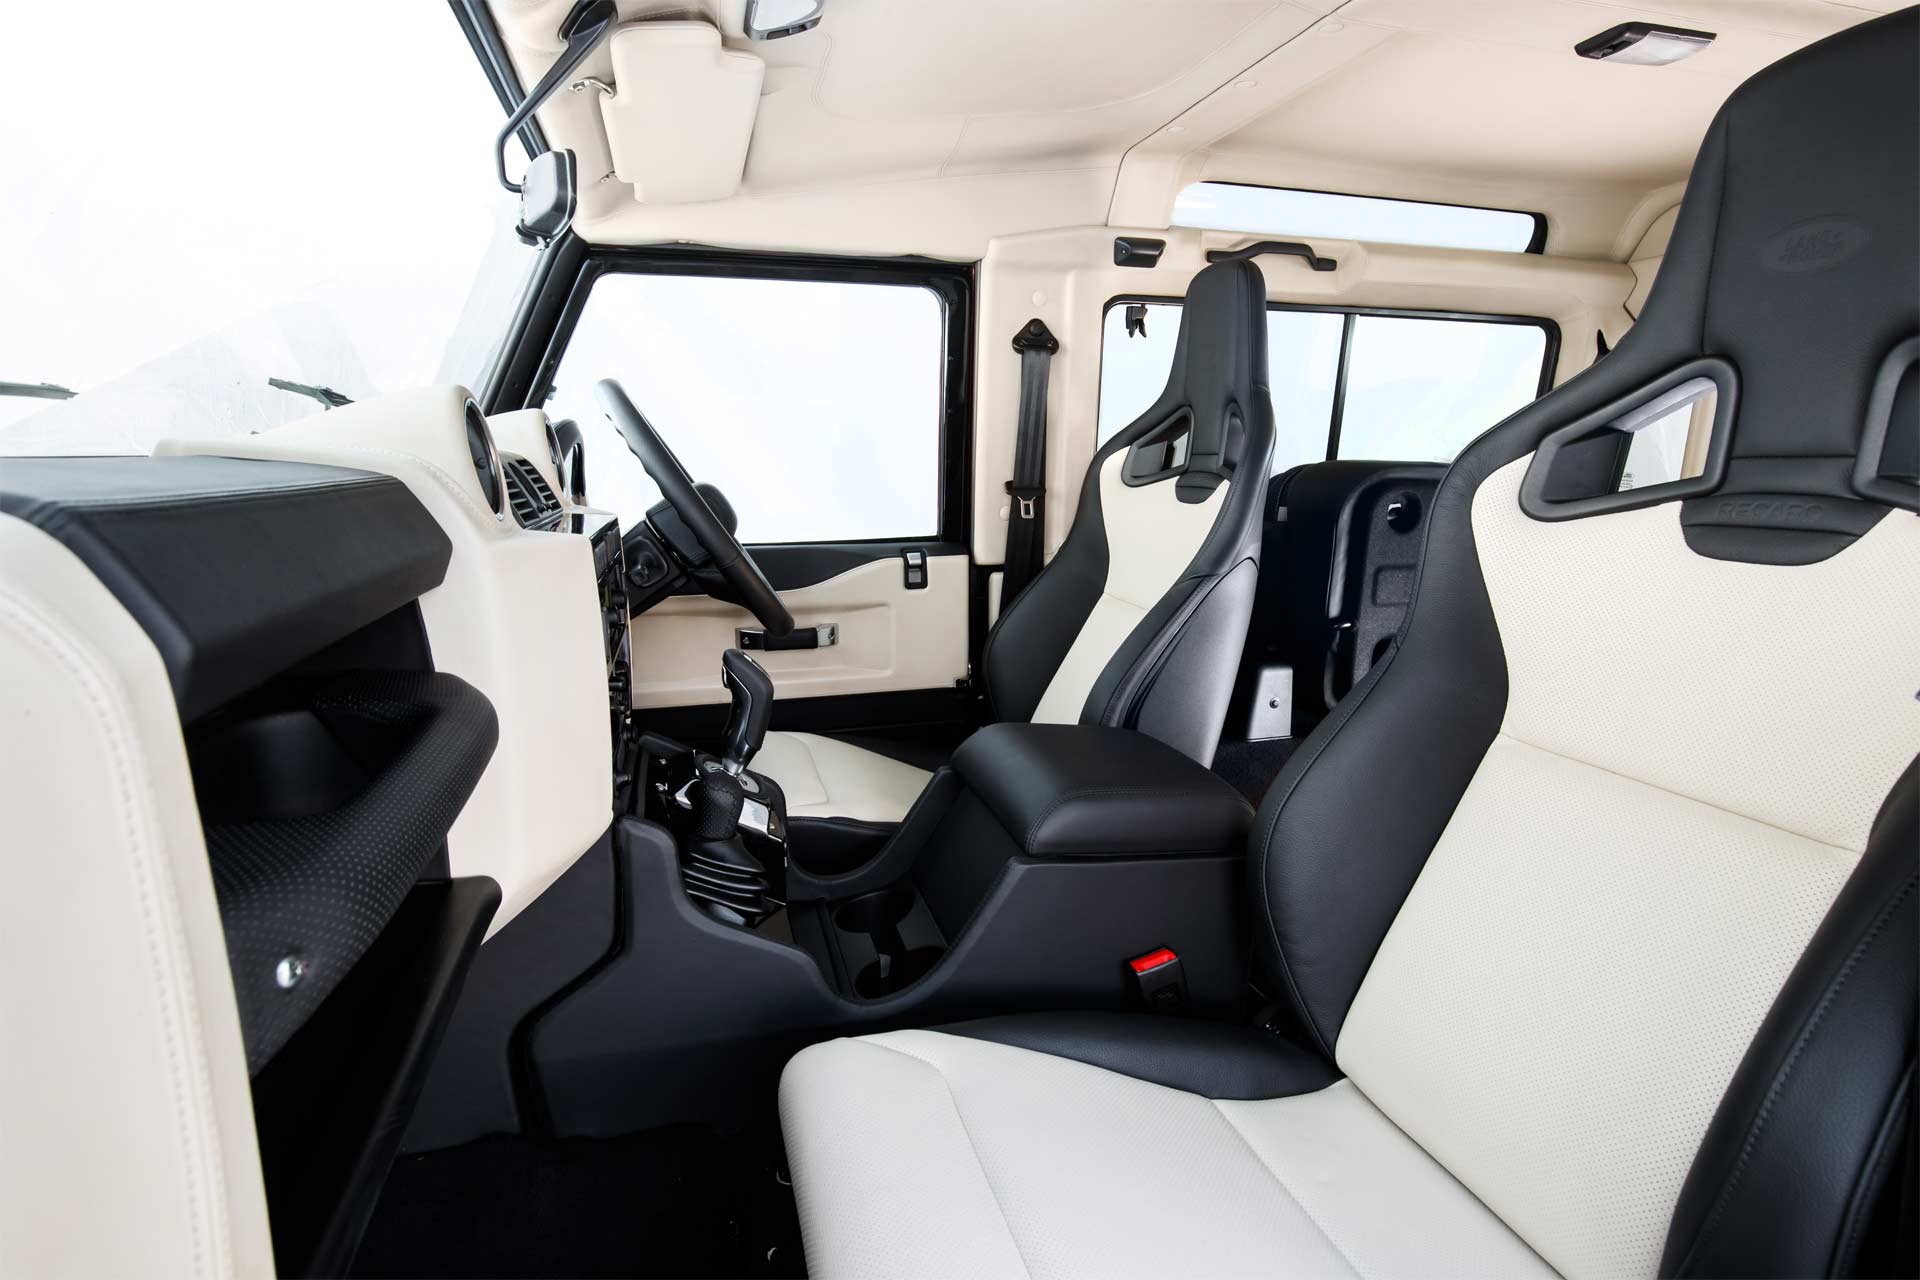 2018-Land-Rover-Defender-V8-interior_2